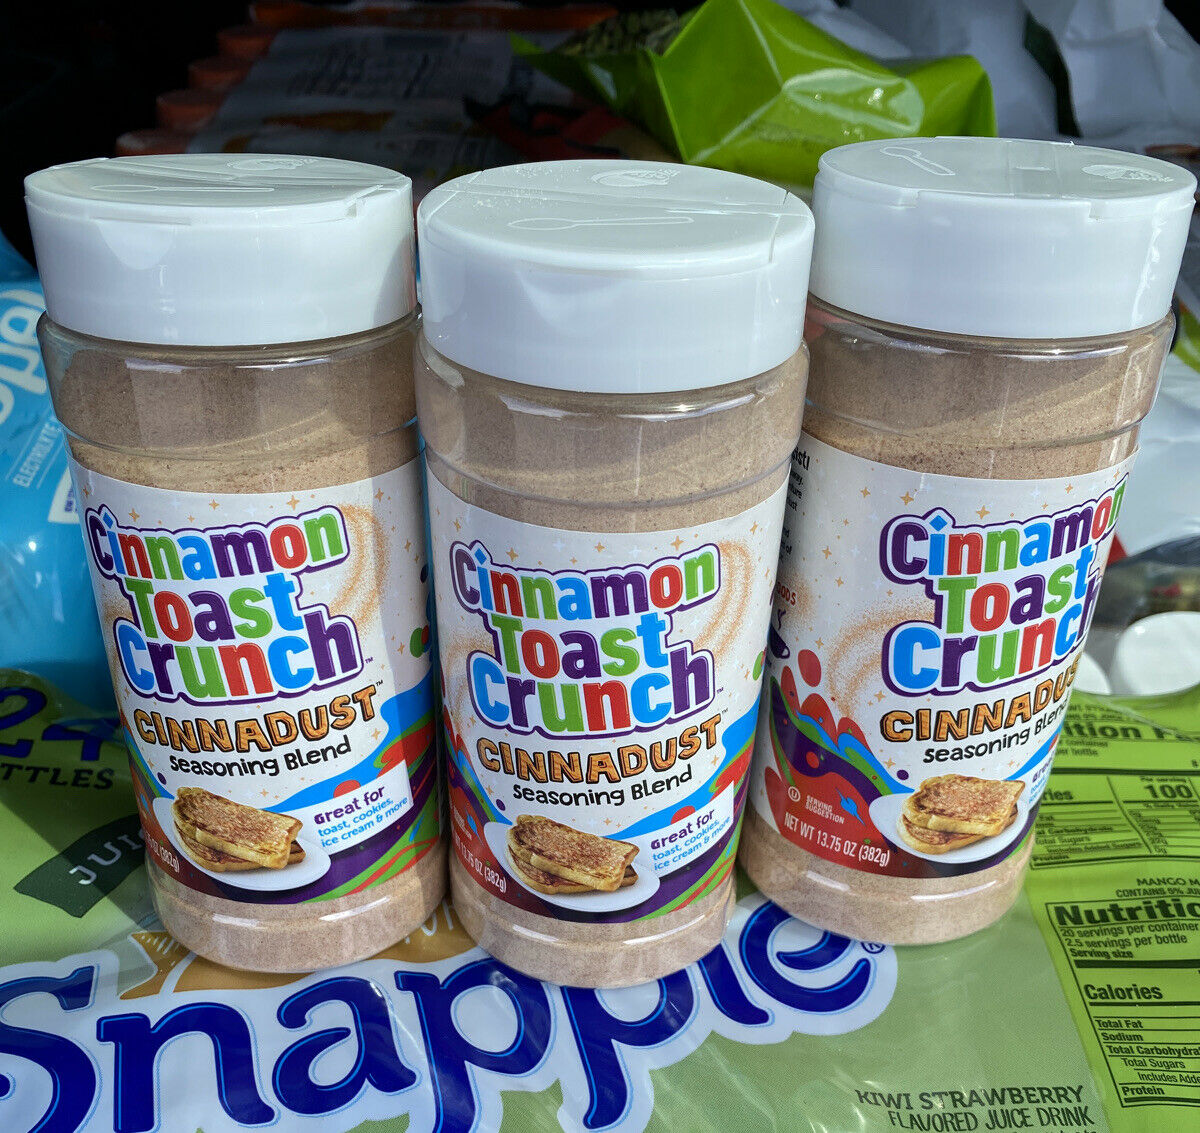 New! Cinnamon Toast Crunch Cinnadust Seasoning Blend, 3-pack (13.75 Oz Each)